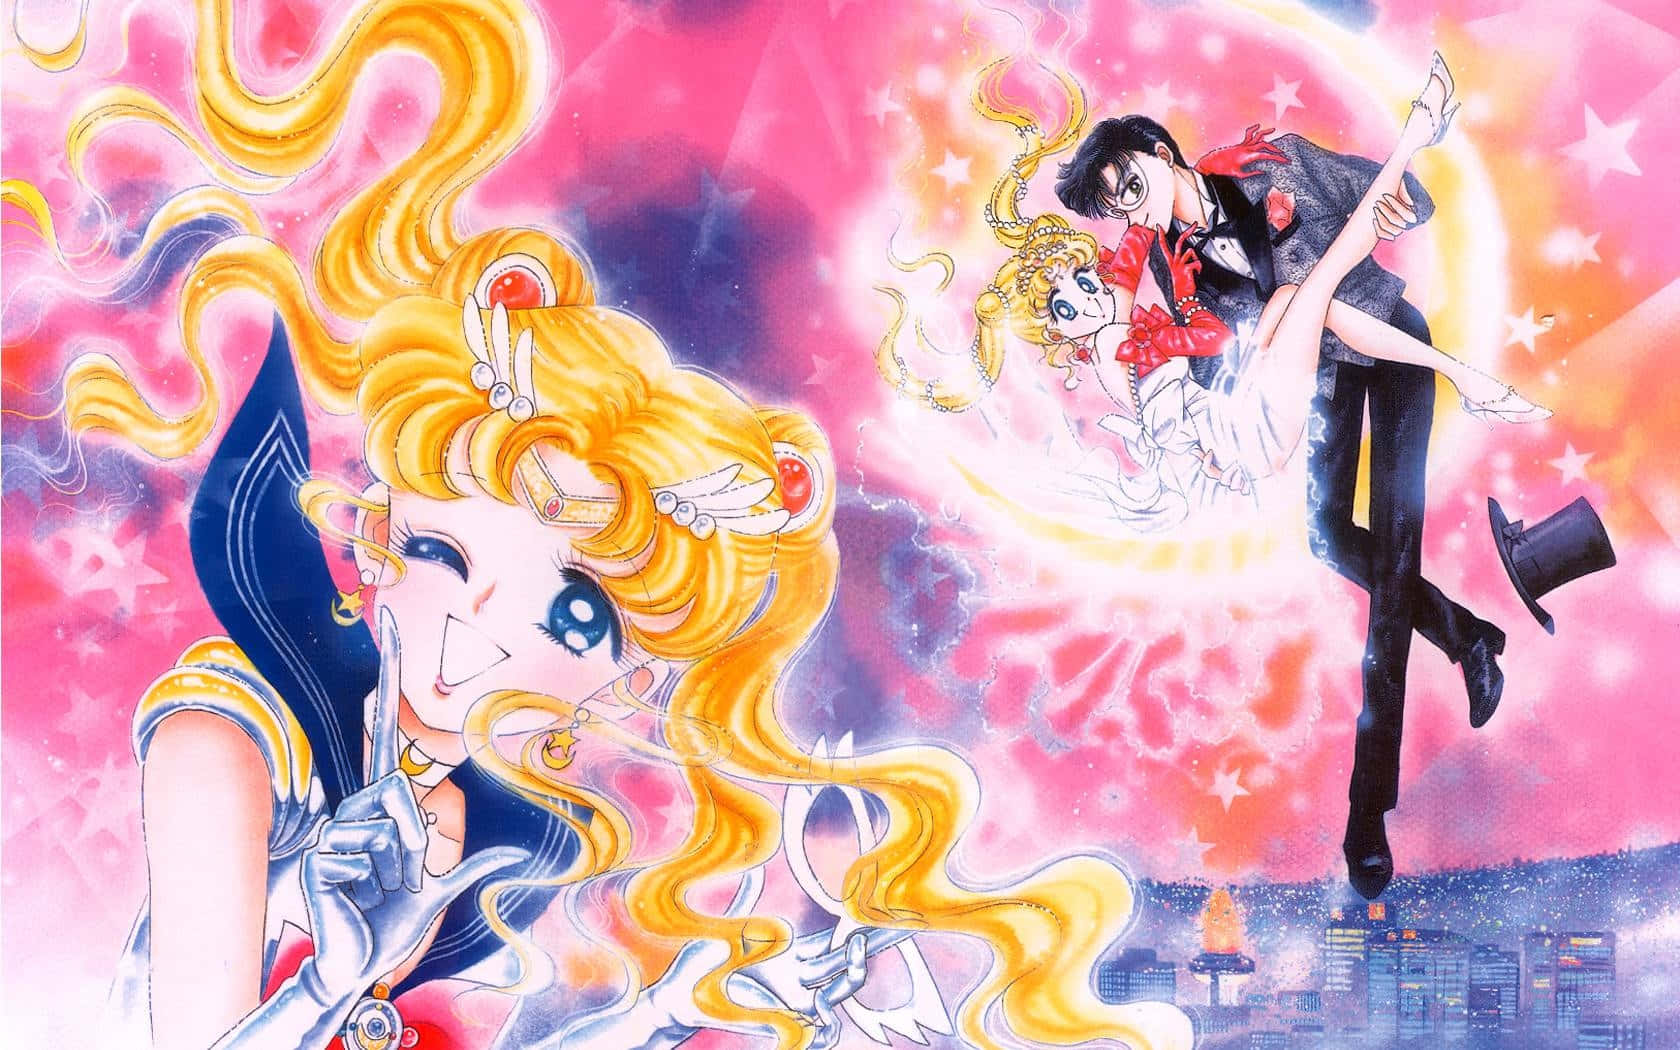 Sailormoon Em Todo O Seu Esplendor Mágico!